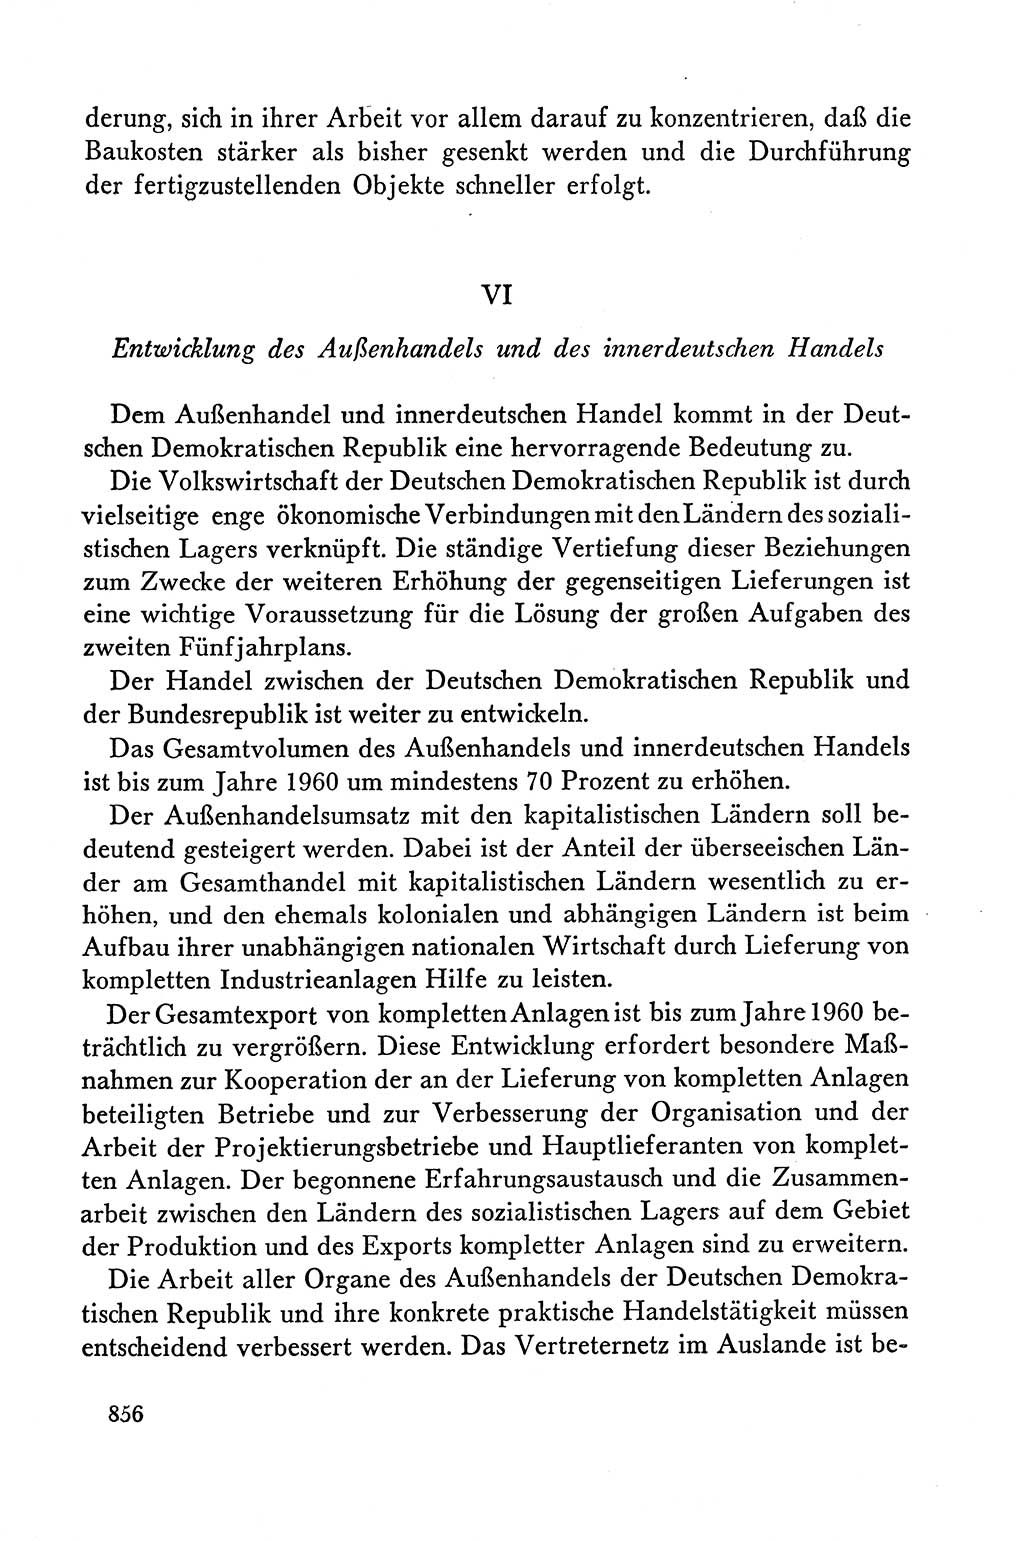 Dokumente der Sozialistischen Einheitspartei Deutschlands (SED) [Deutsche Demokratische Republik (DDR)] 1958-1959, Seite 856 (Dok. SED DDR 1958-1959, S. 856)